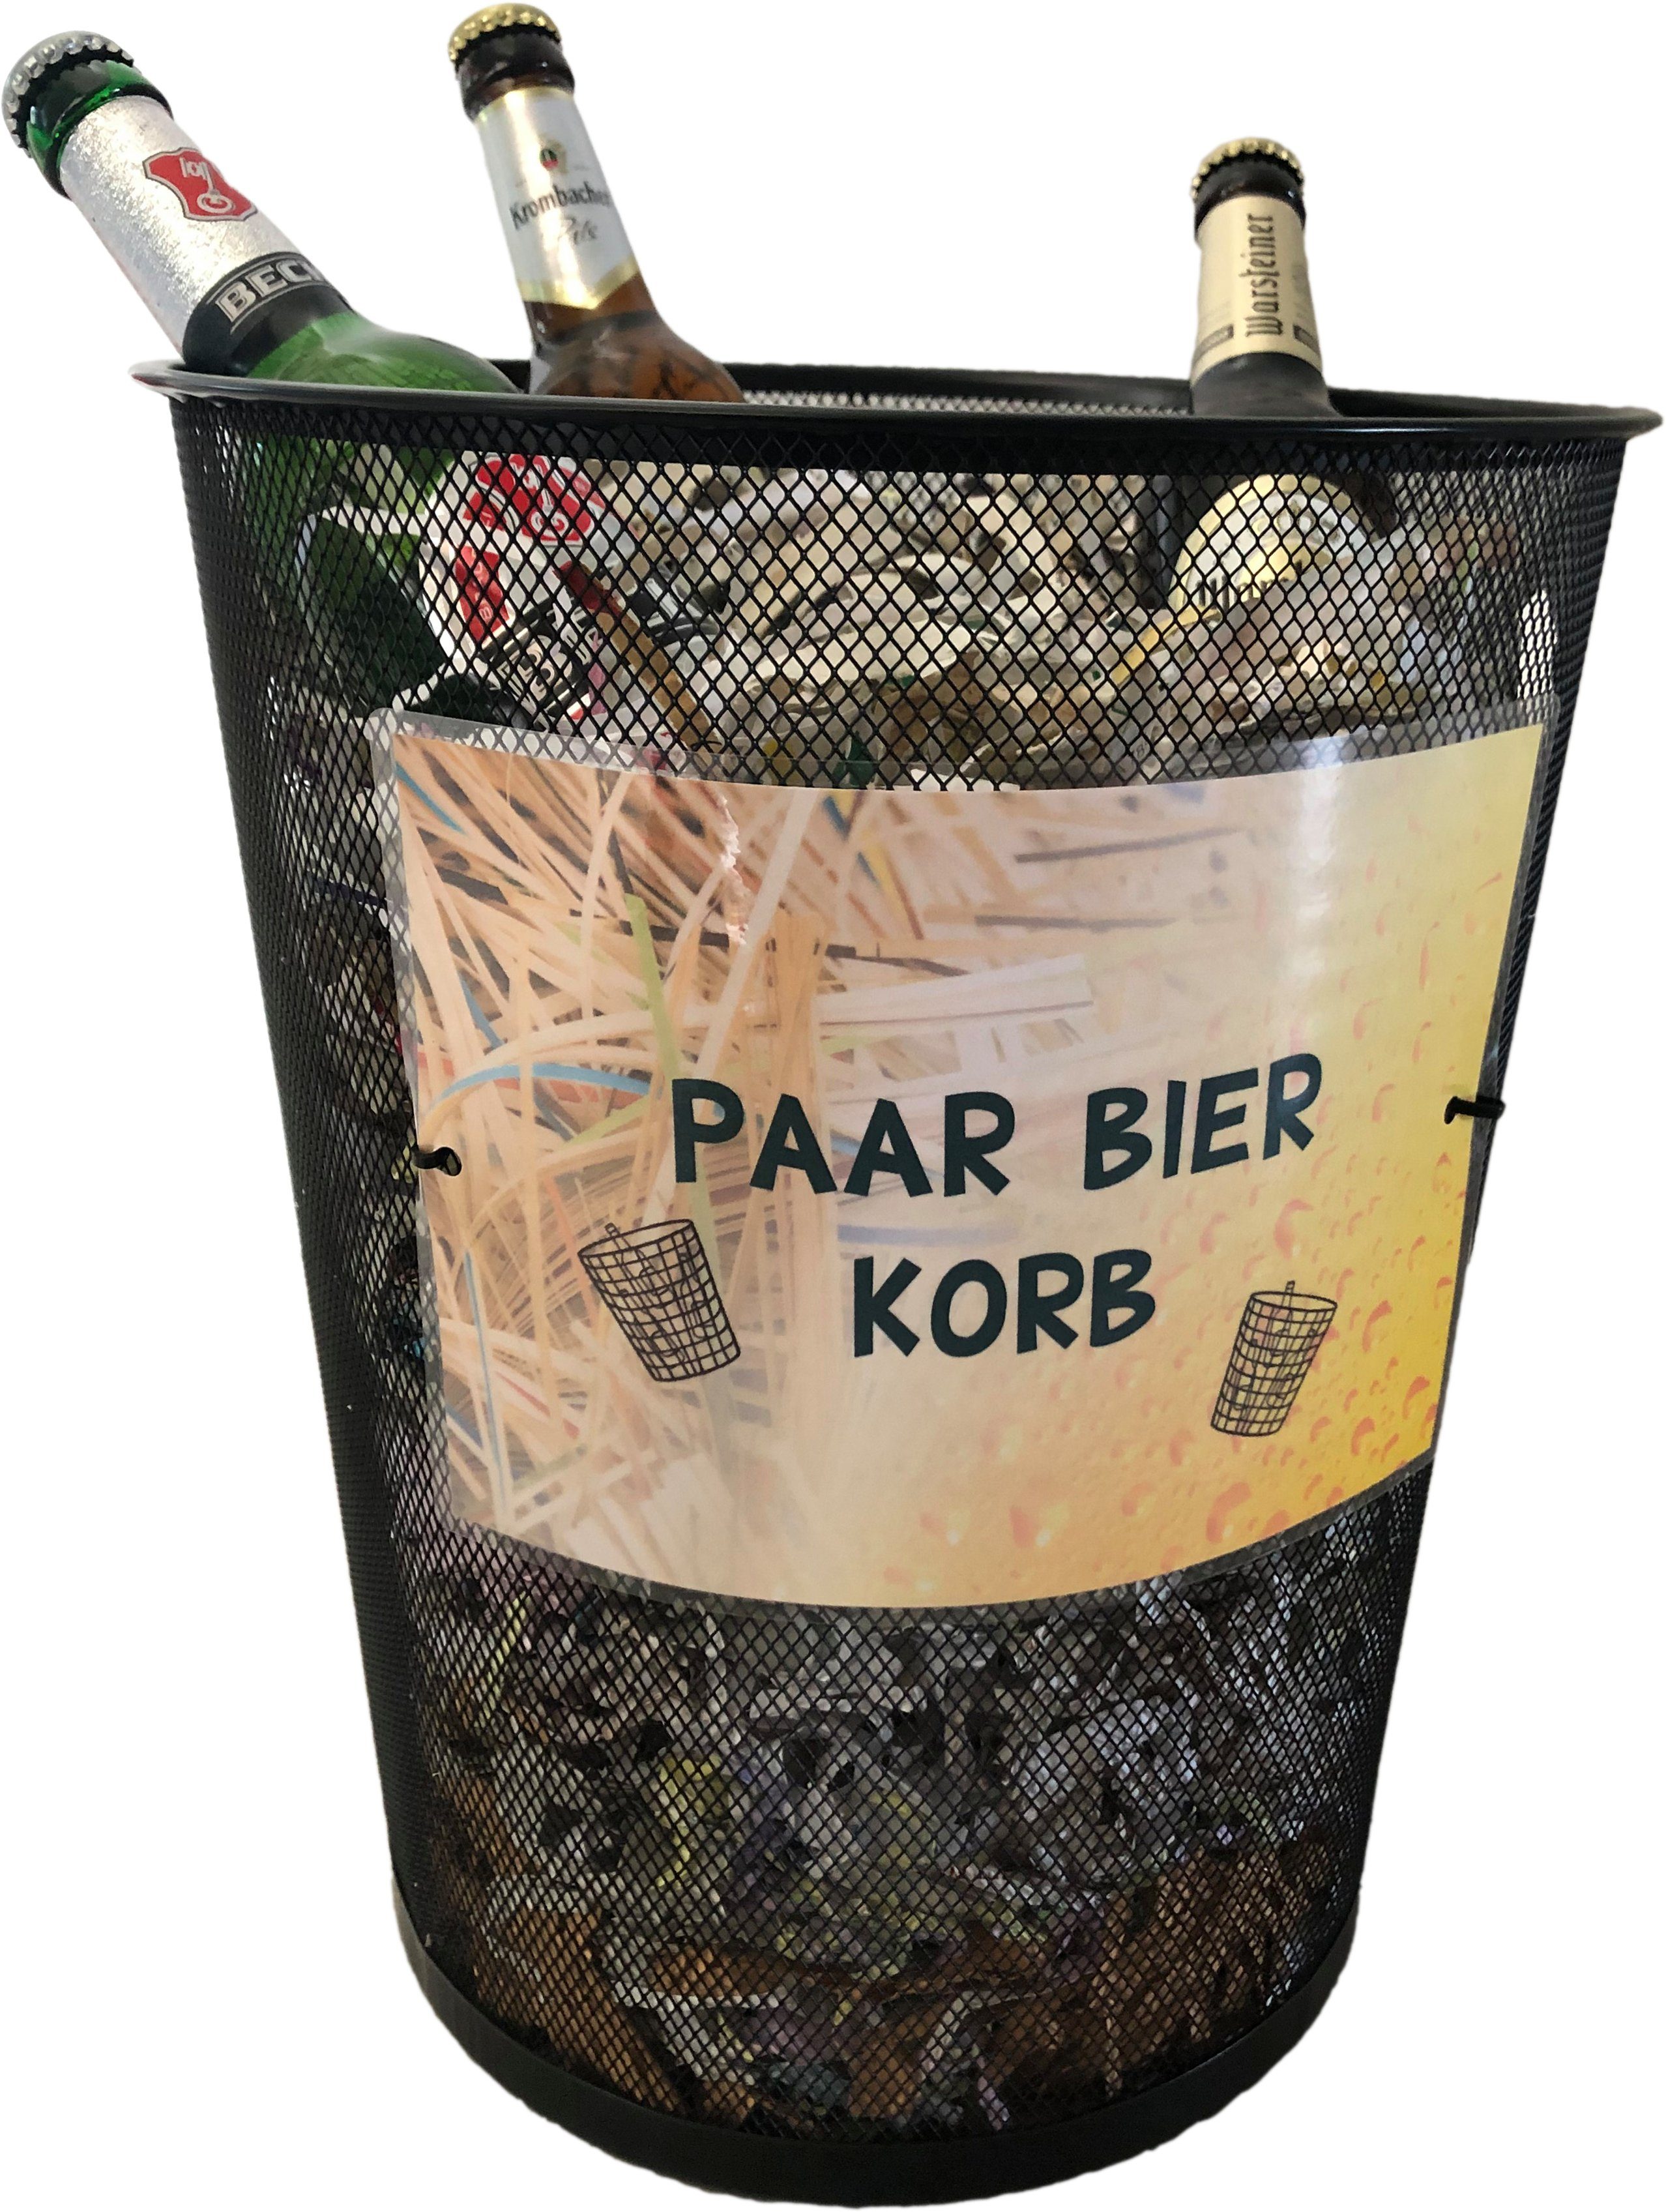 Deggelbam Papierkorb Paar Bier Korb / Witzige Geschenkidee, Ein Hingucker auf jeder Geburtstagsparty! | Papierkörbe